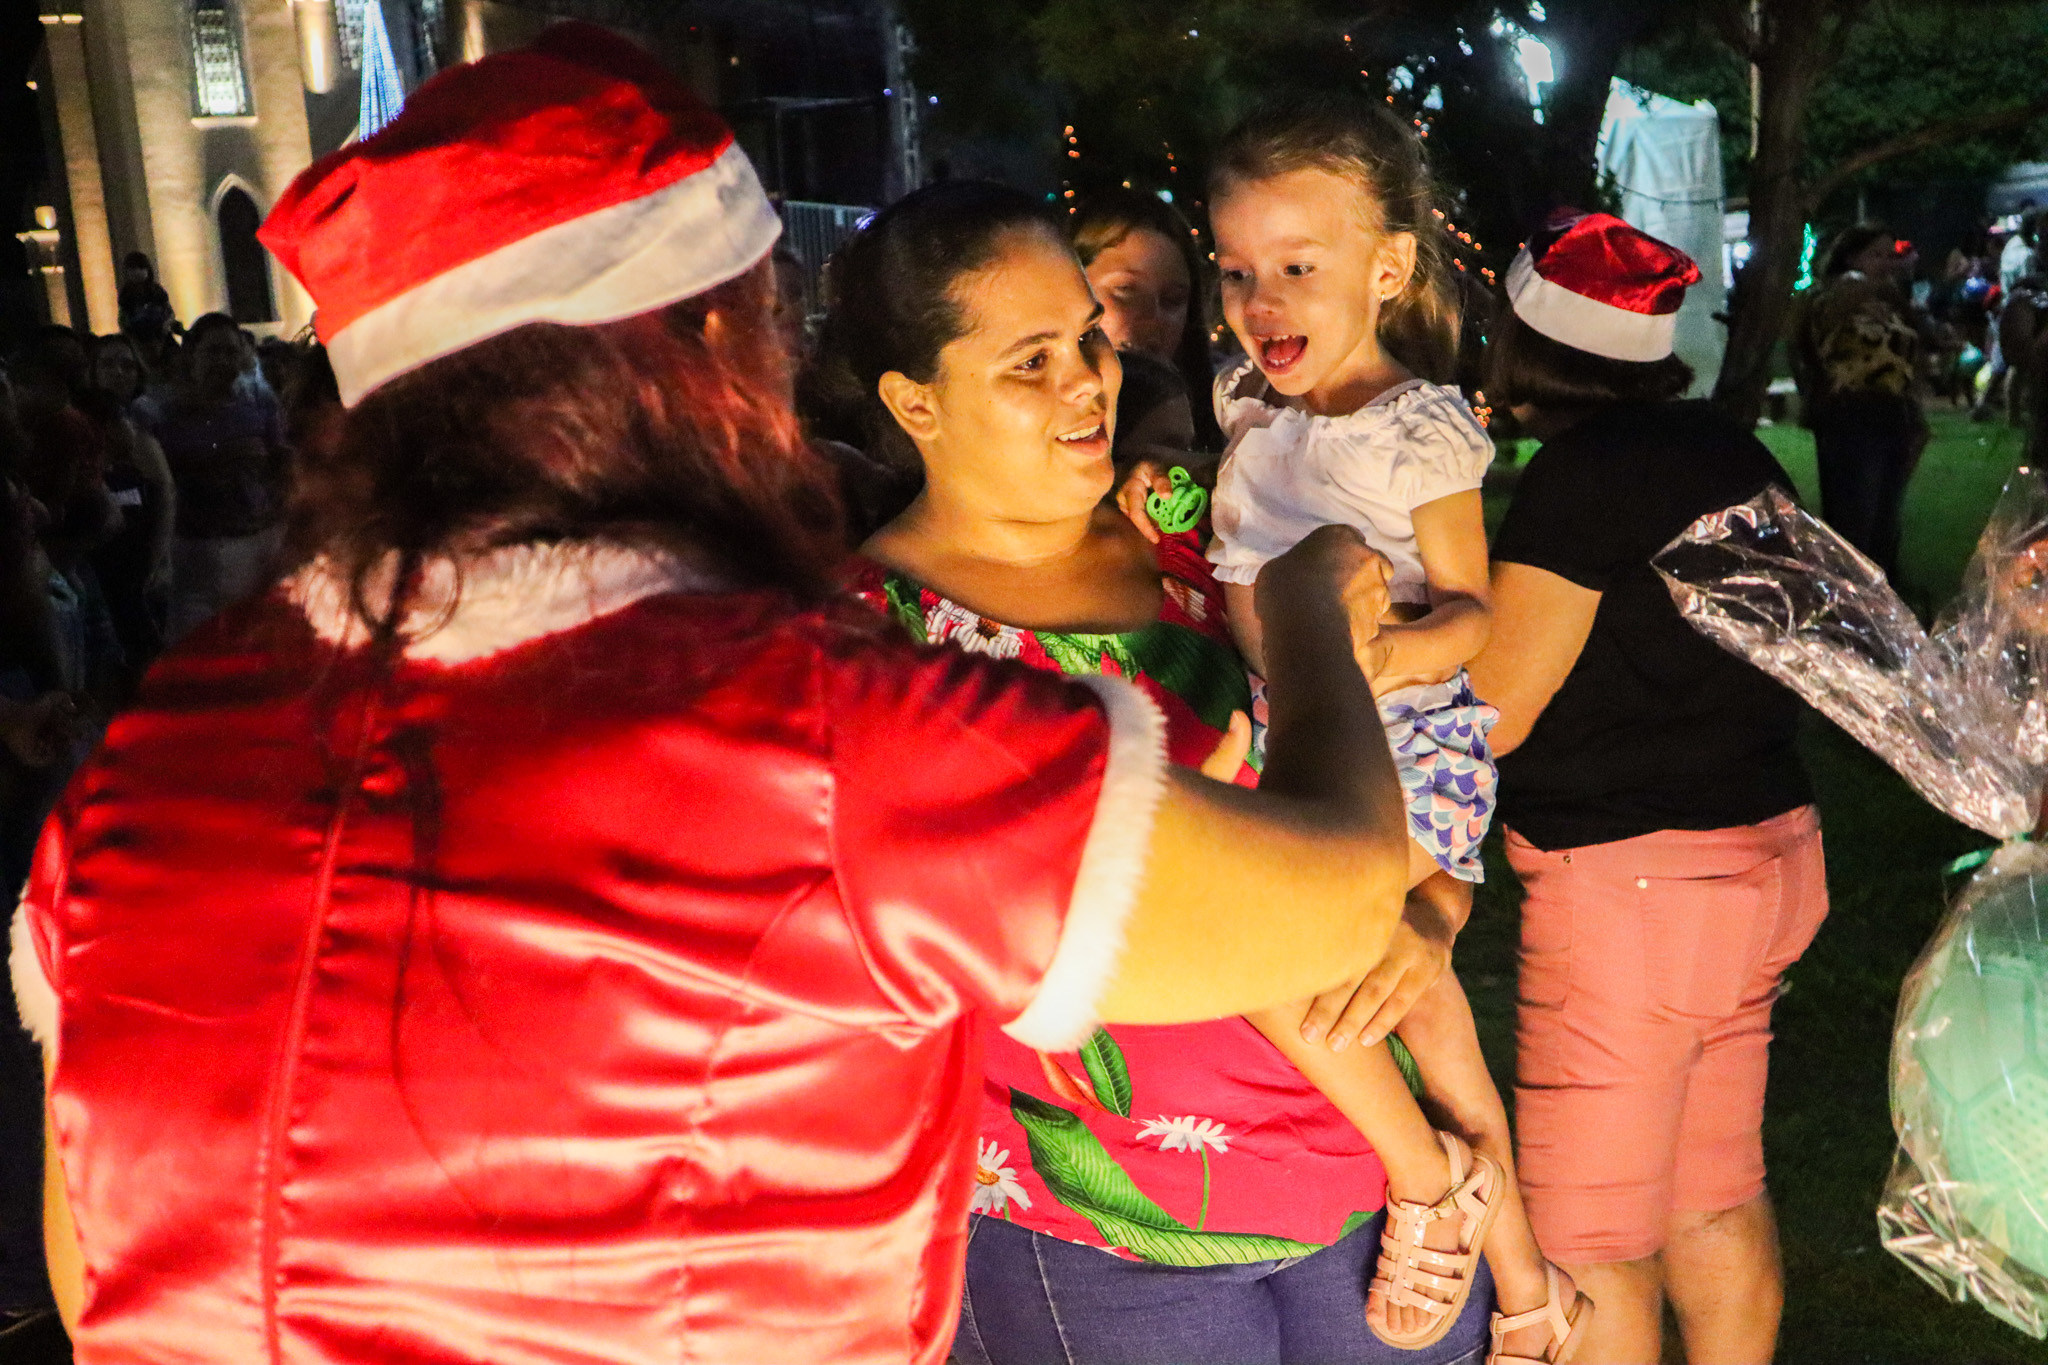 Mamãe Noel distribui brinquedos a criança. Foto: Thomas Volpato Moutropoulos / Prefeitura Municipal de Urupês